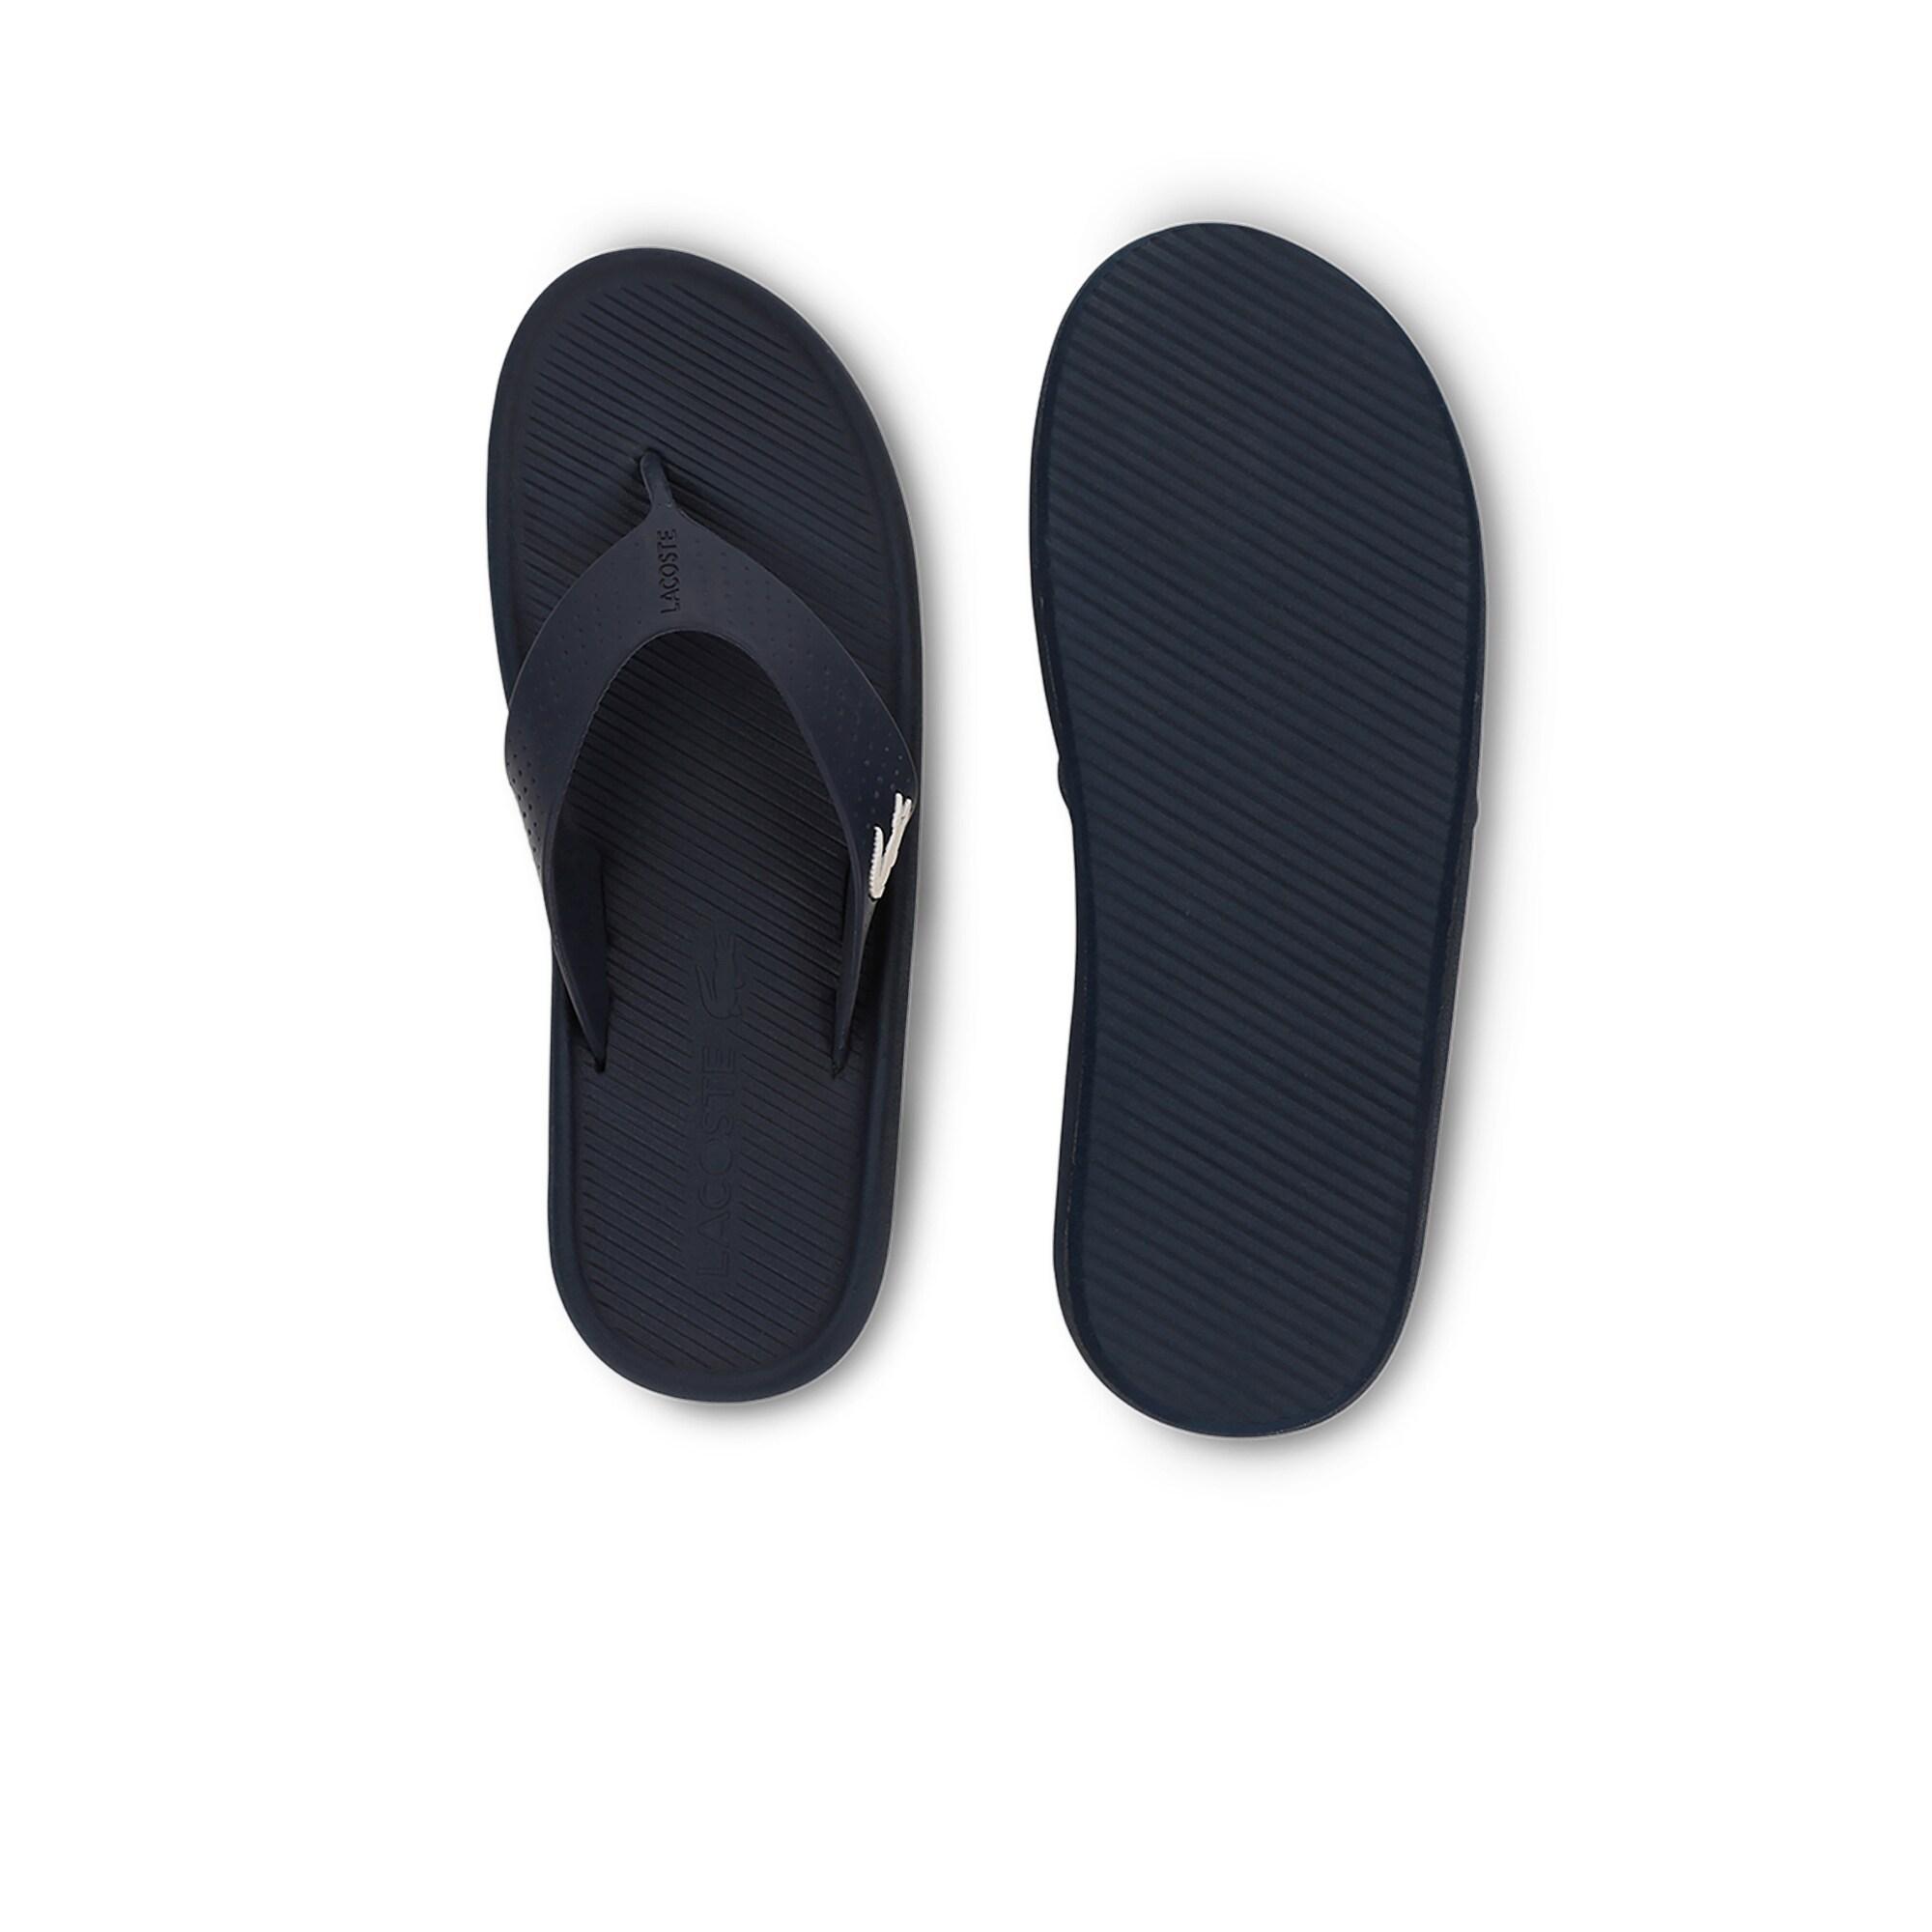 Lacoste Croco Sandal 219 1 Cma Erkek Lacivert - Beyaz Terlik. 5